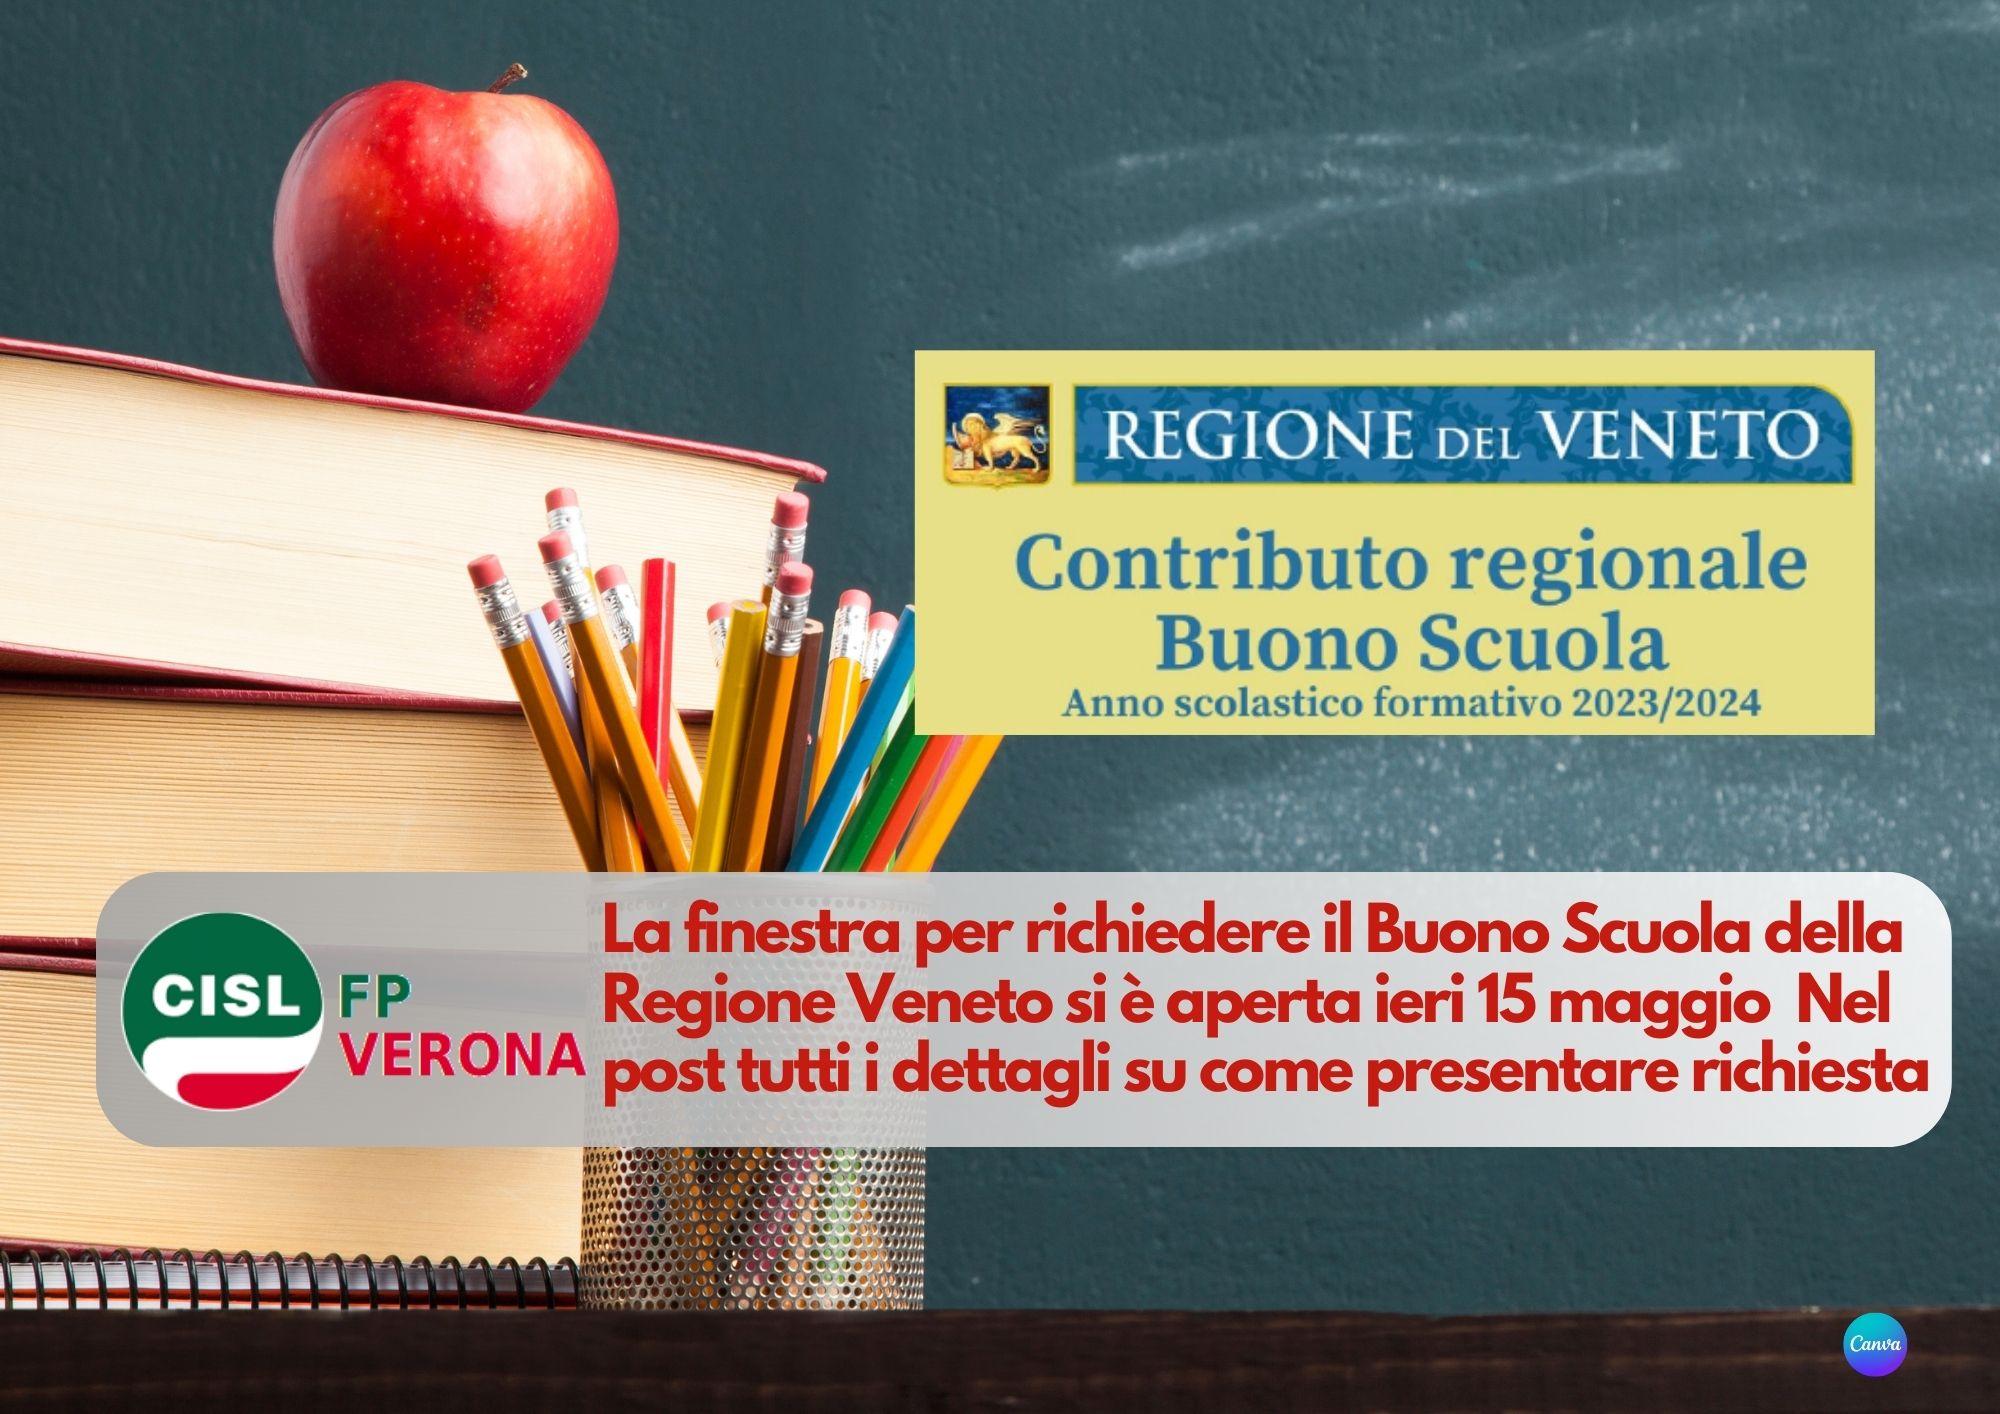 CISL FP Verona. Contributo regionale Veneto "Buono Scuola". Come e quando richiederlo